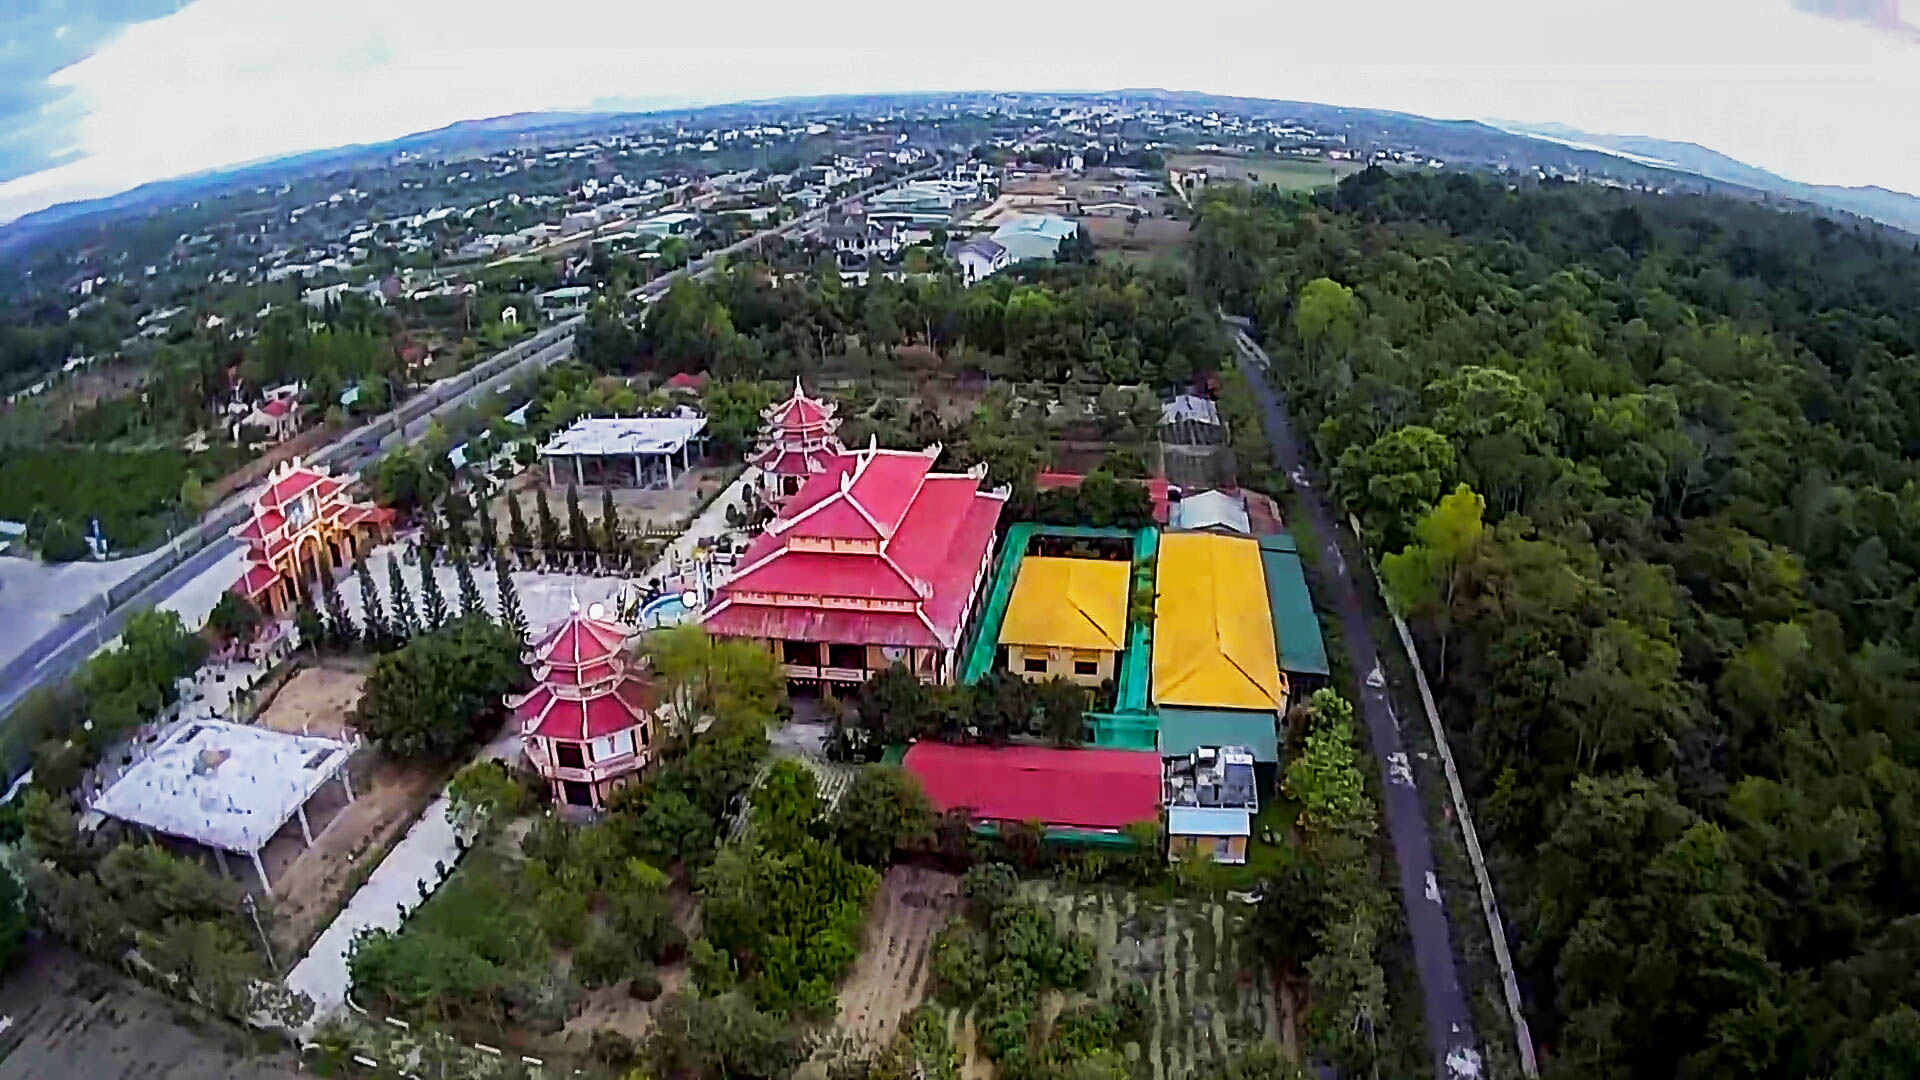 Hình ảnh chùa Tháp Kỳ Quang nhìn trên cao - Chùa ở Việt Nam